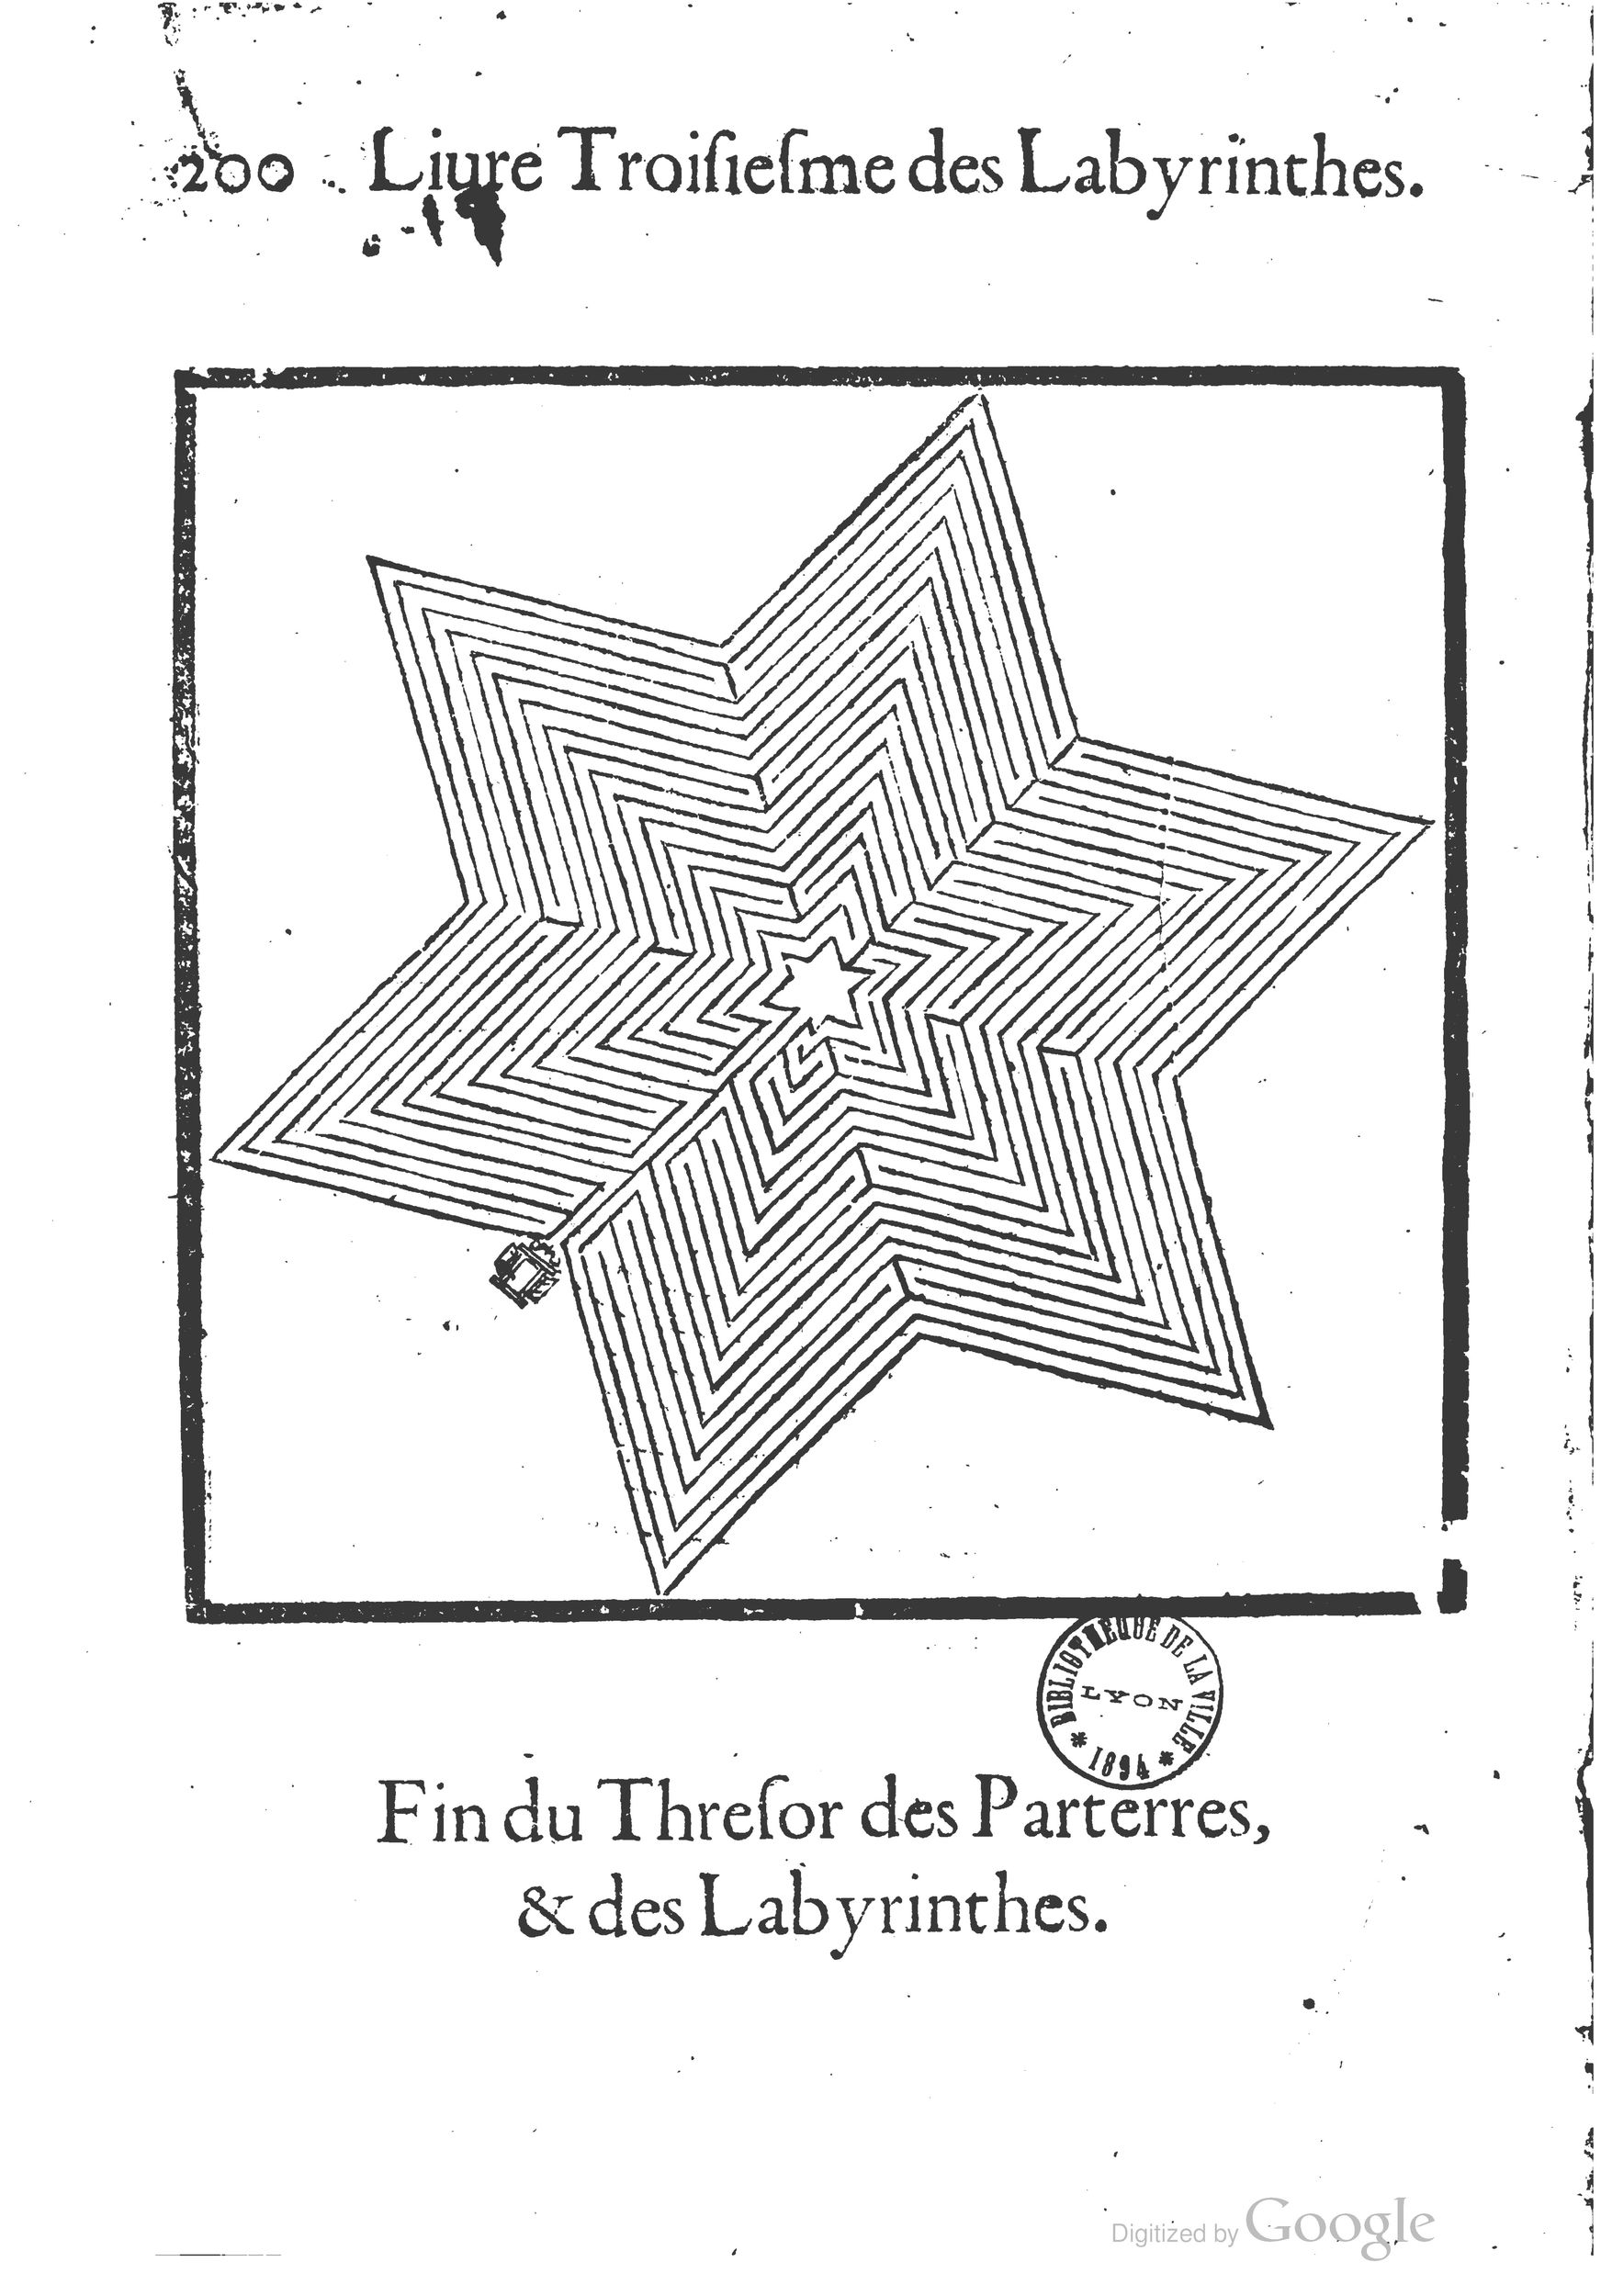 1629 Trésor des parterres de l'univers Gamonet_BM Lyon_Page_233.jpg